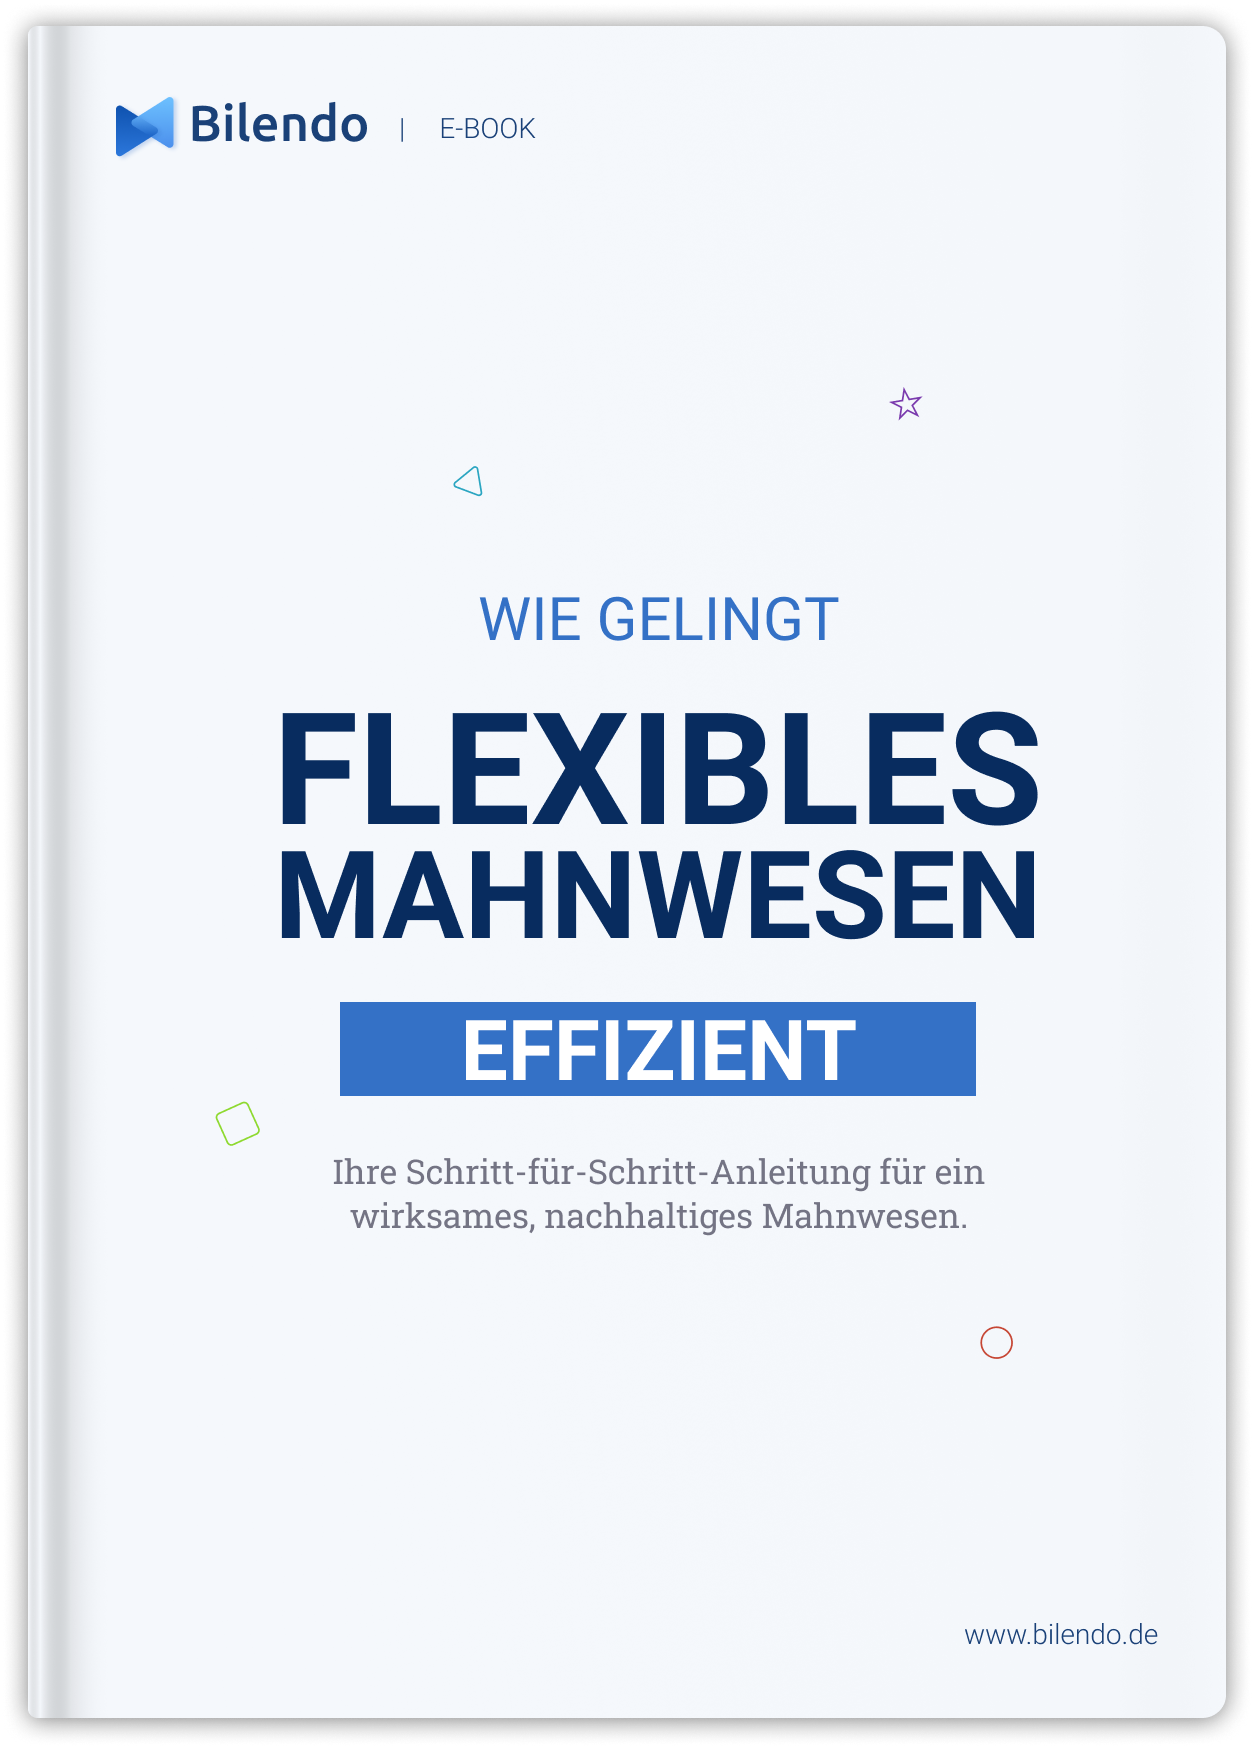 E-Book Flexibles Mahnwesen effizient